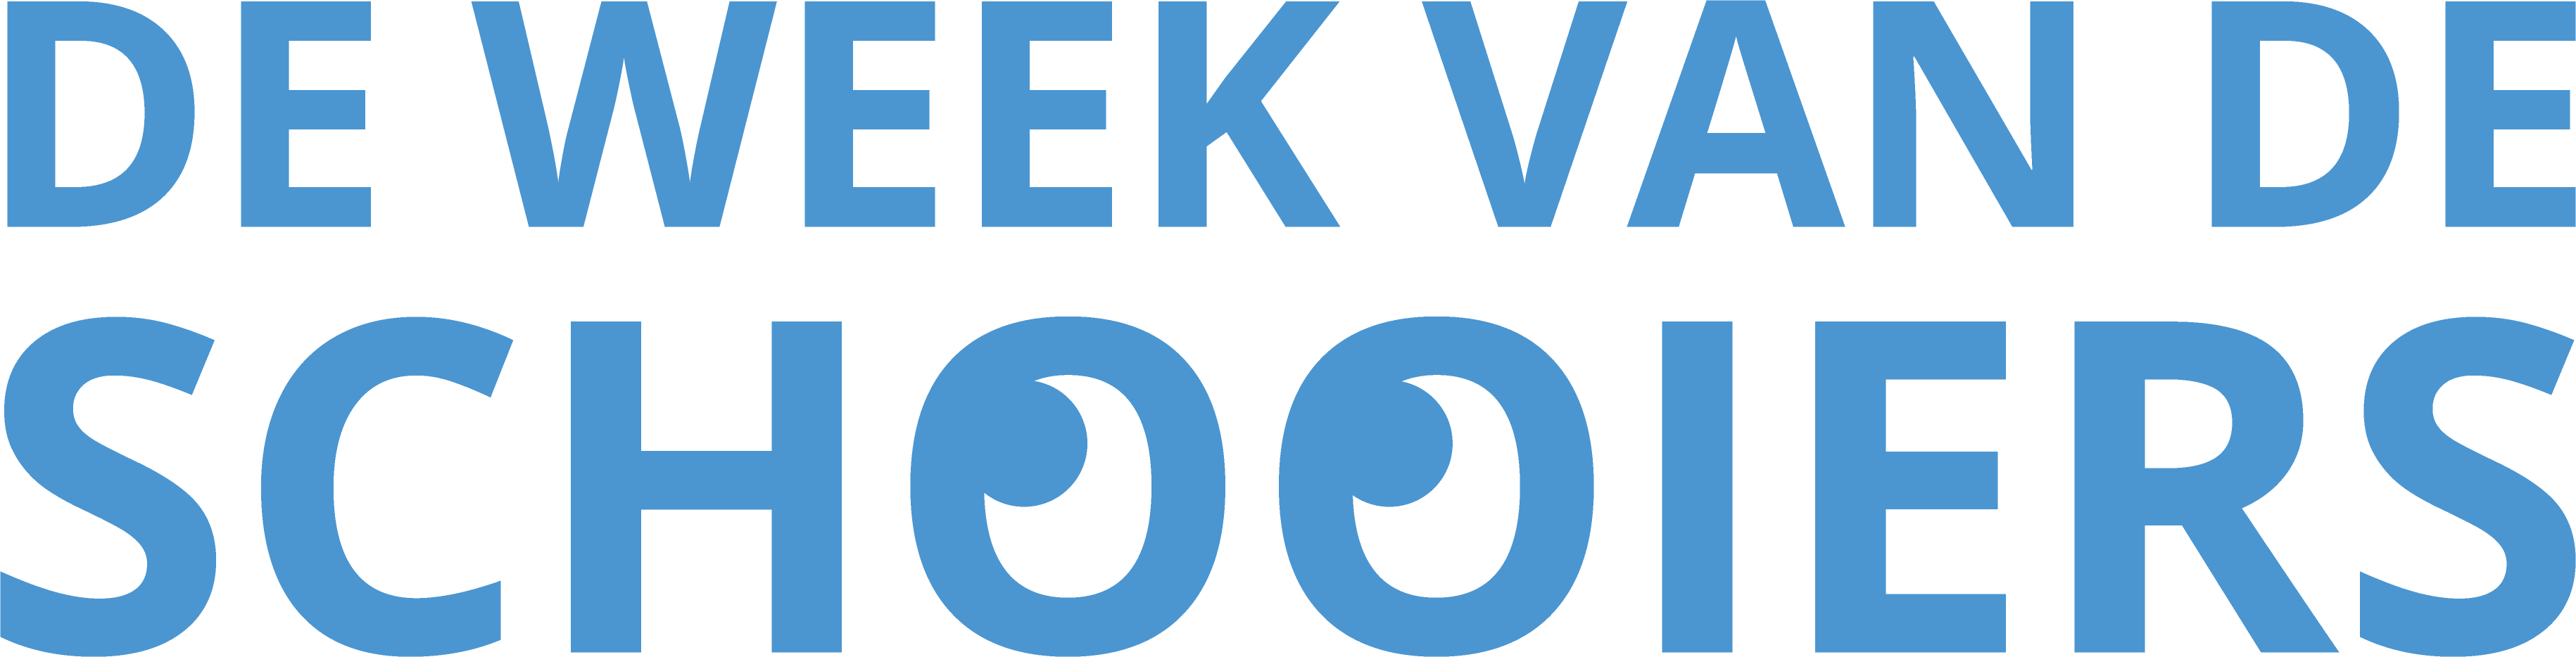 De Week van de Schooiers - logo blauw